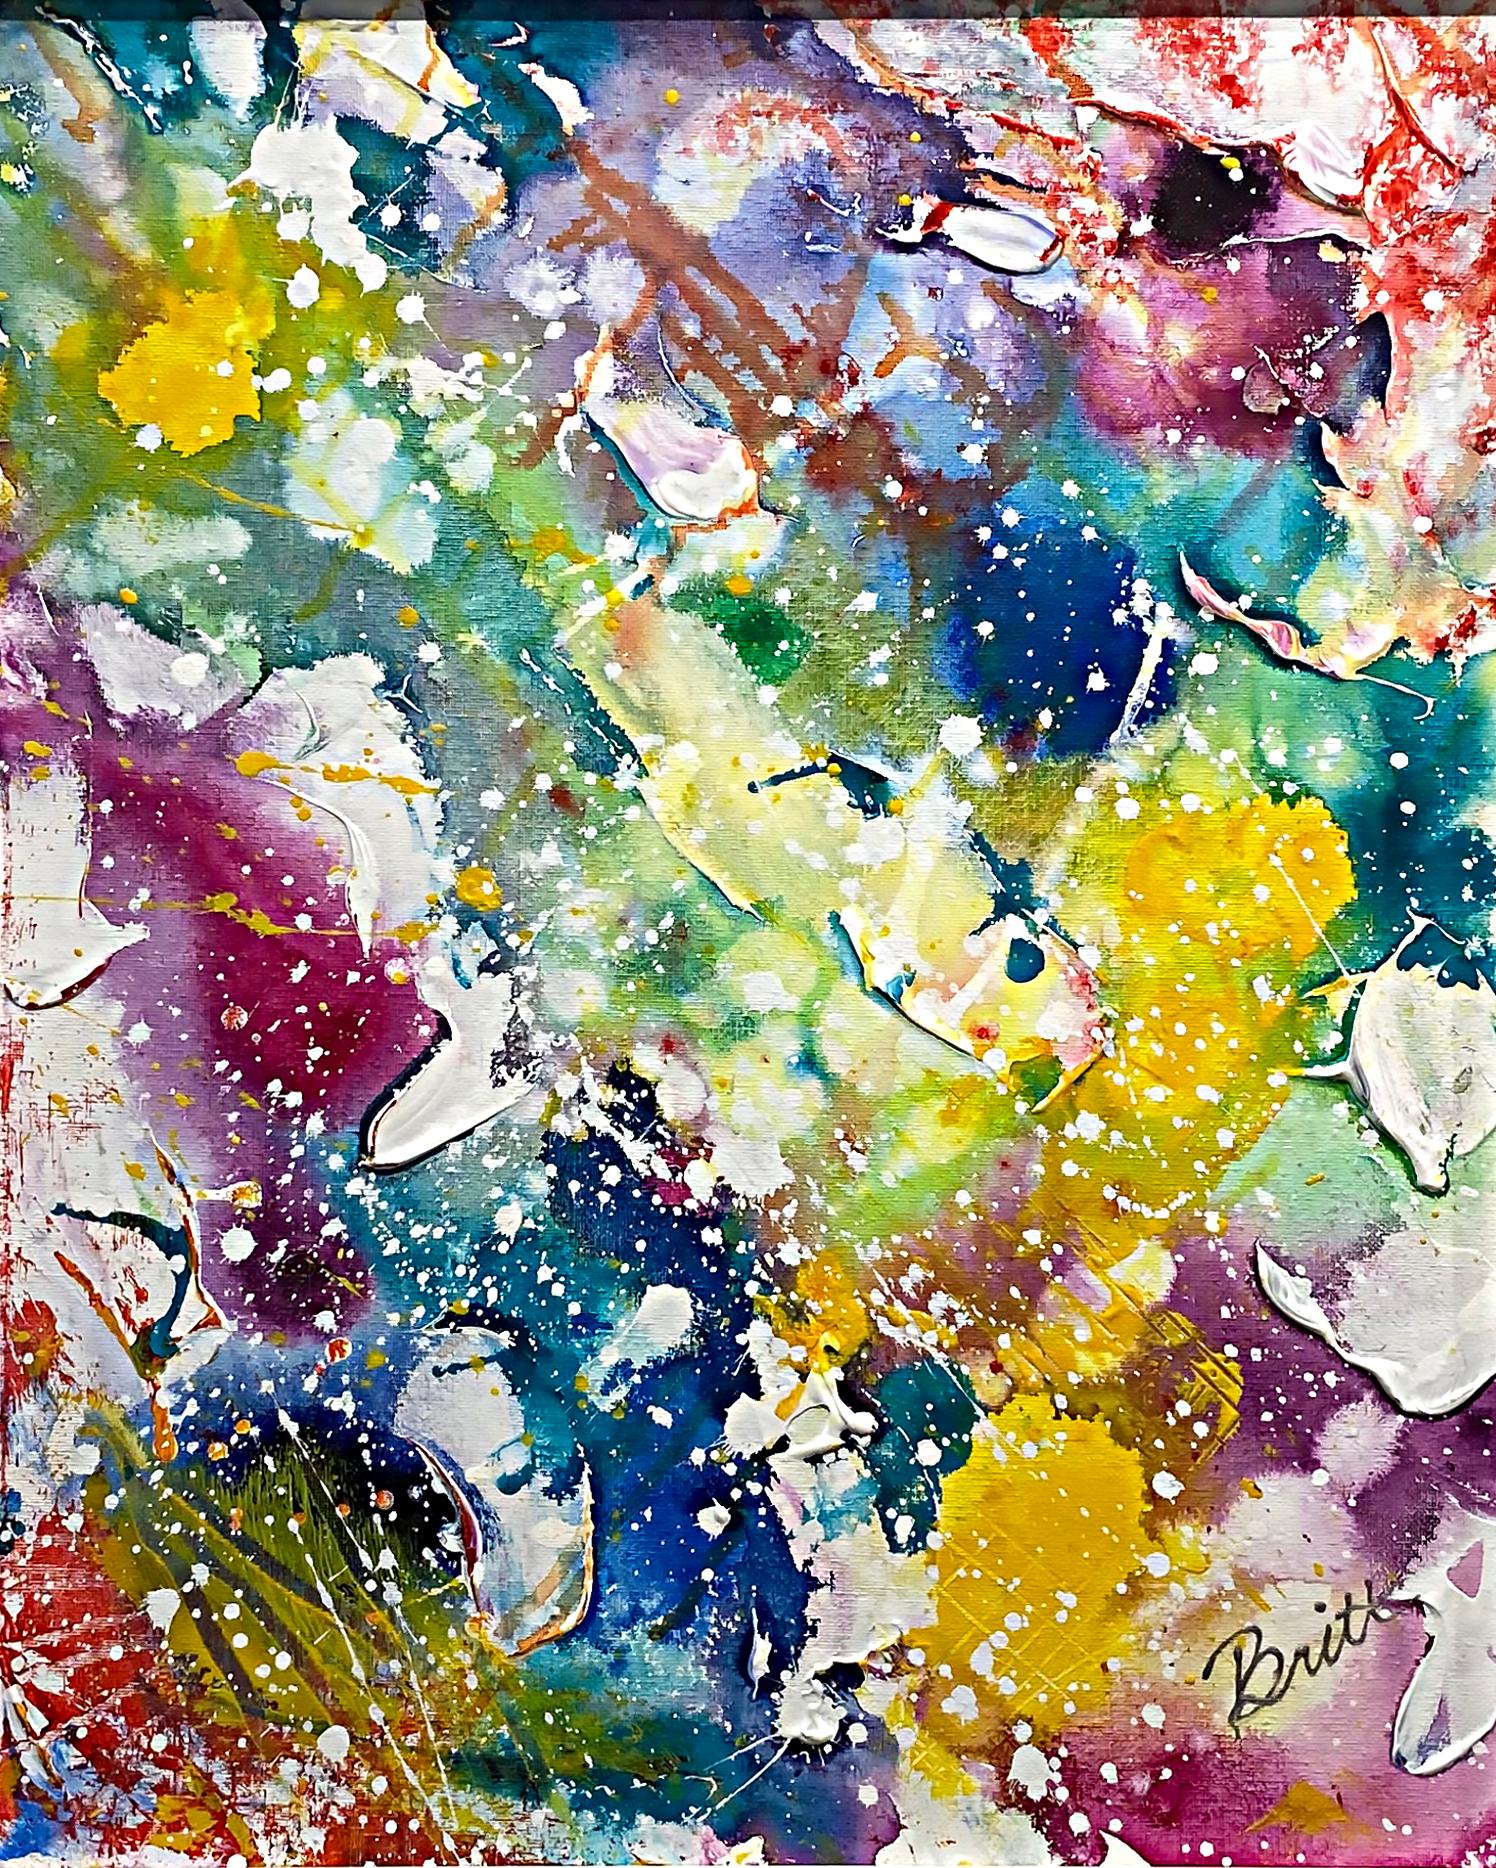 Peinture abstraite contemporaine sur toile par Brittany Murphy

 Nous proposons à la vente une peinture abstraite contemporaine colorée sur toile de Brittany Murphy. Le tableau est signé en bas à droite et au verso. Il est présenté dans un cadre